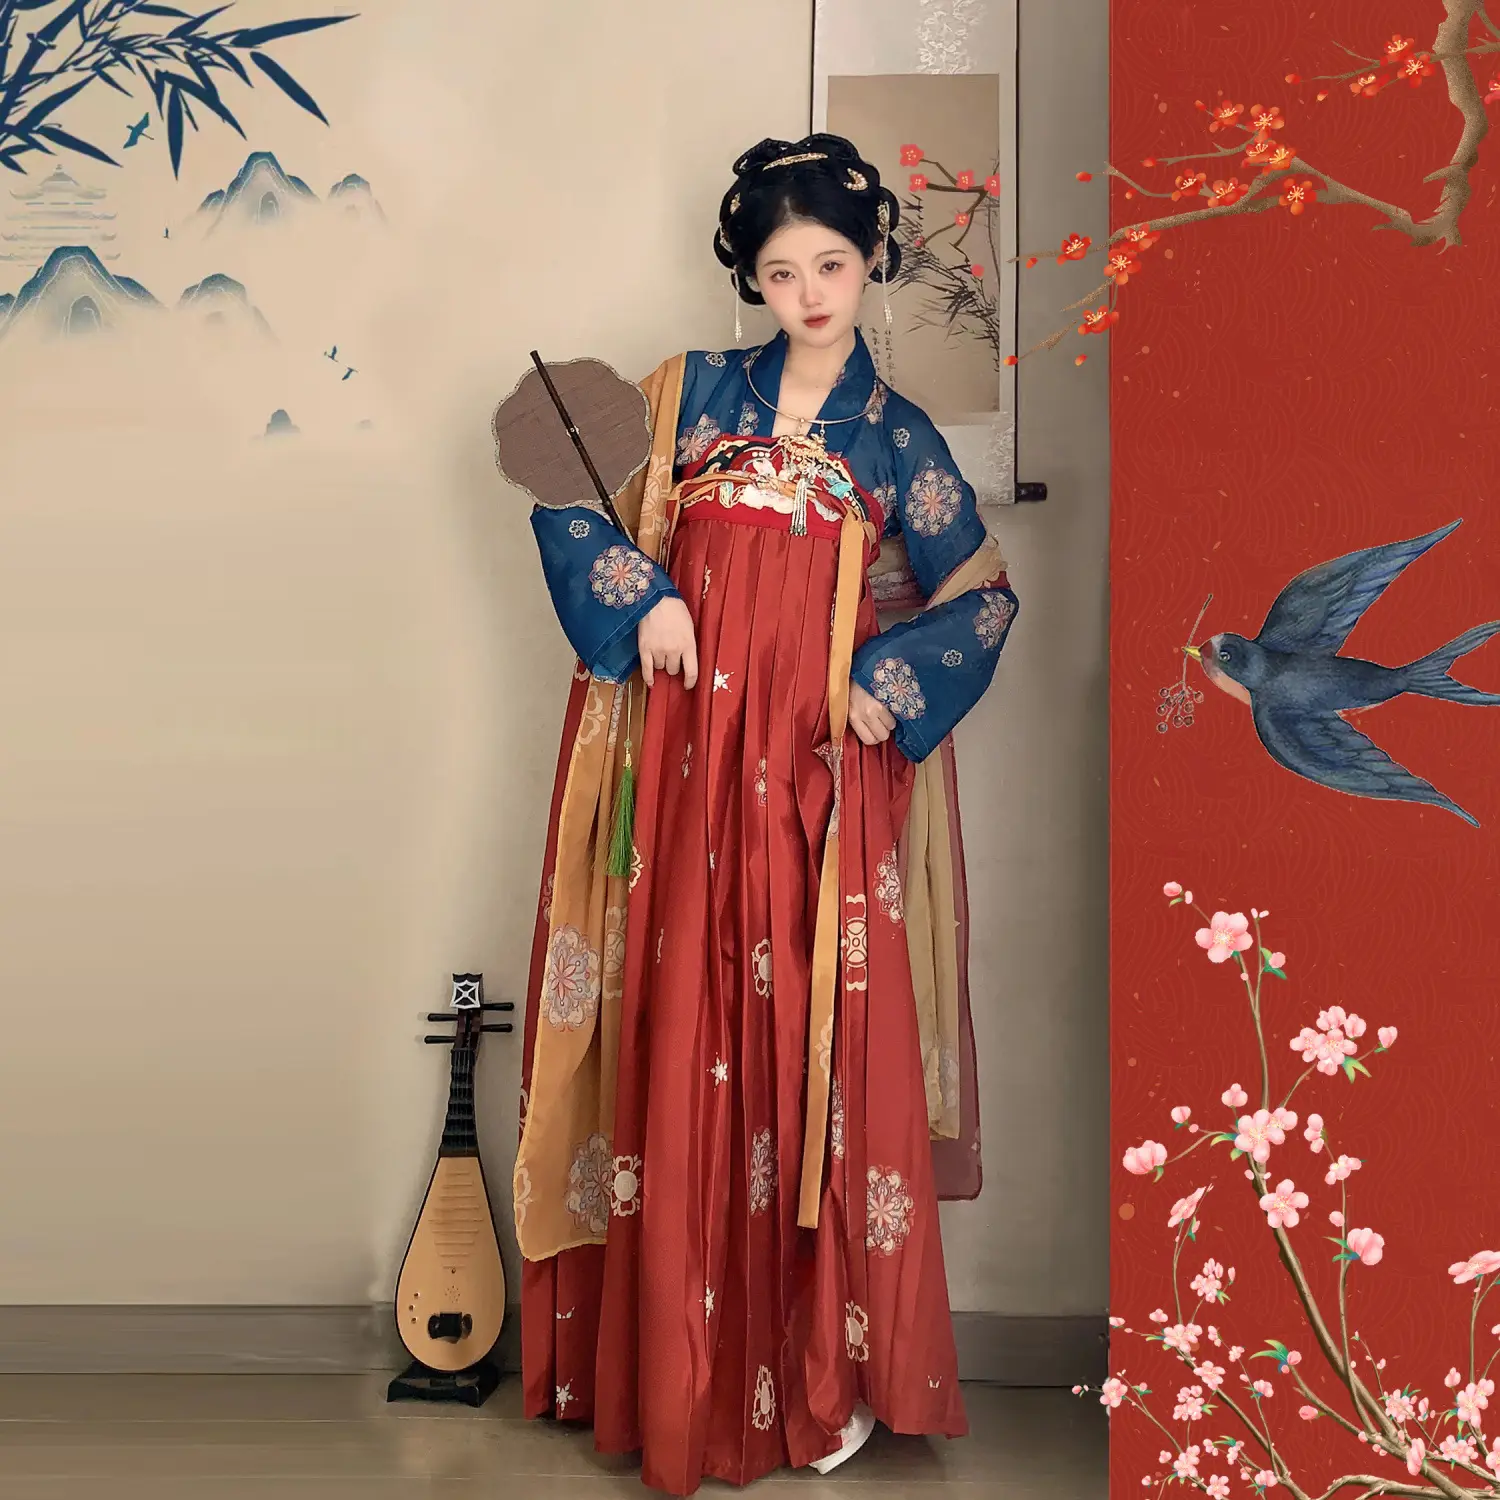 ชุดฮันฟูของผู้หญิงชุดจีนแบบดั้งเดิมชุดวันพีซดัดแปลงทันสมัยสวยงาม